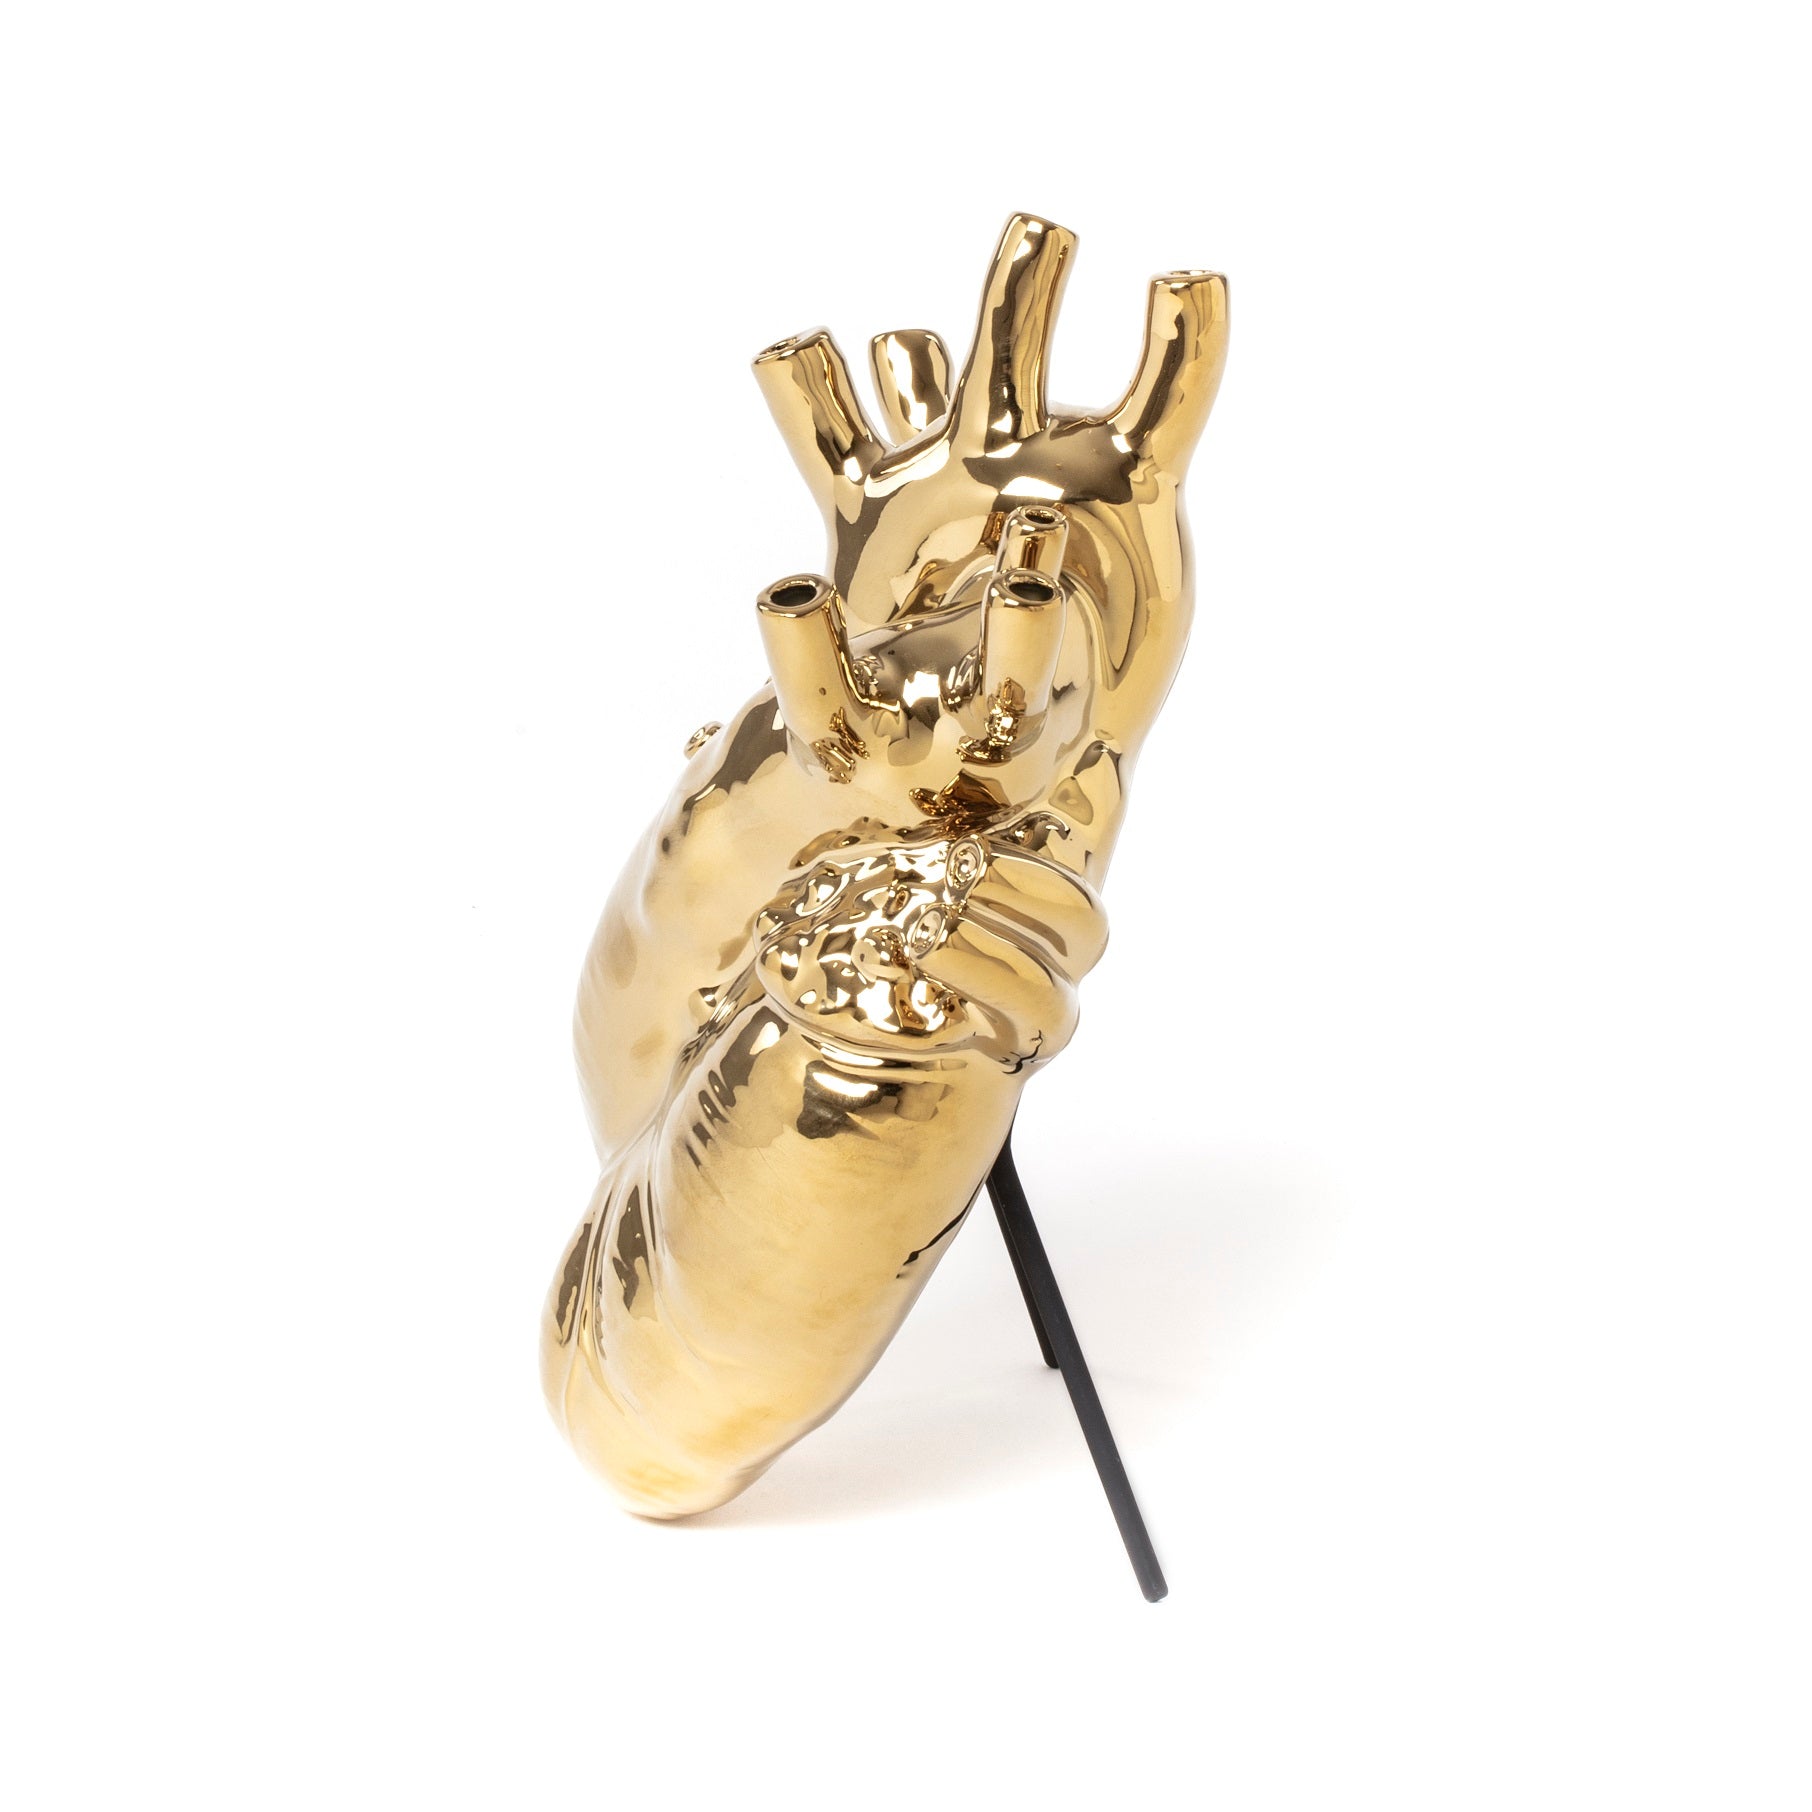 Love in Bloom Gold  is een prachtige porceleinen vaas, ontworpen door Marcantonio voor het Italiaanse merk Seletti. Hij is vormgegeven in de vorm van een anatomisch menselijk hart, en voorzien van een laag goud. Het perfecte kado voor iedereen met een gouden hart.